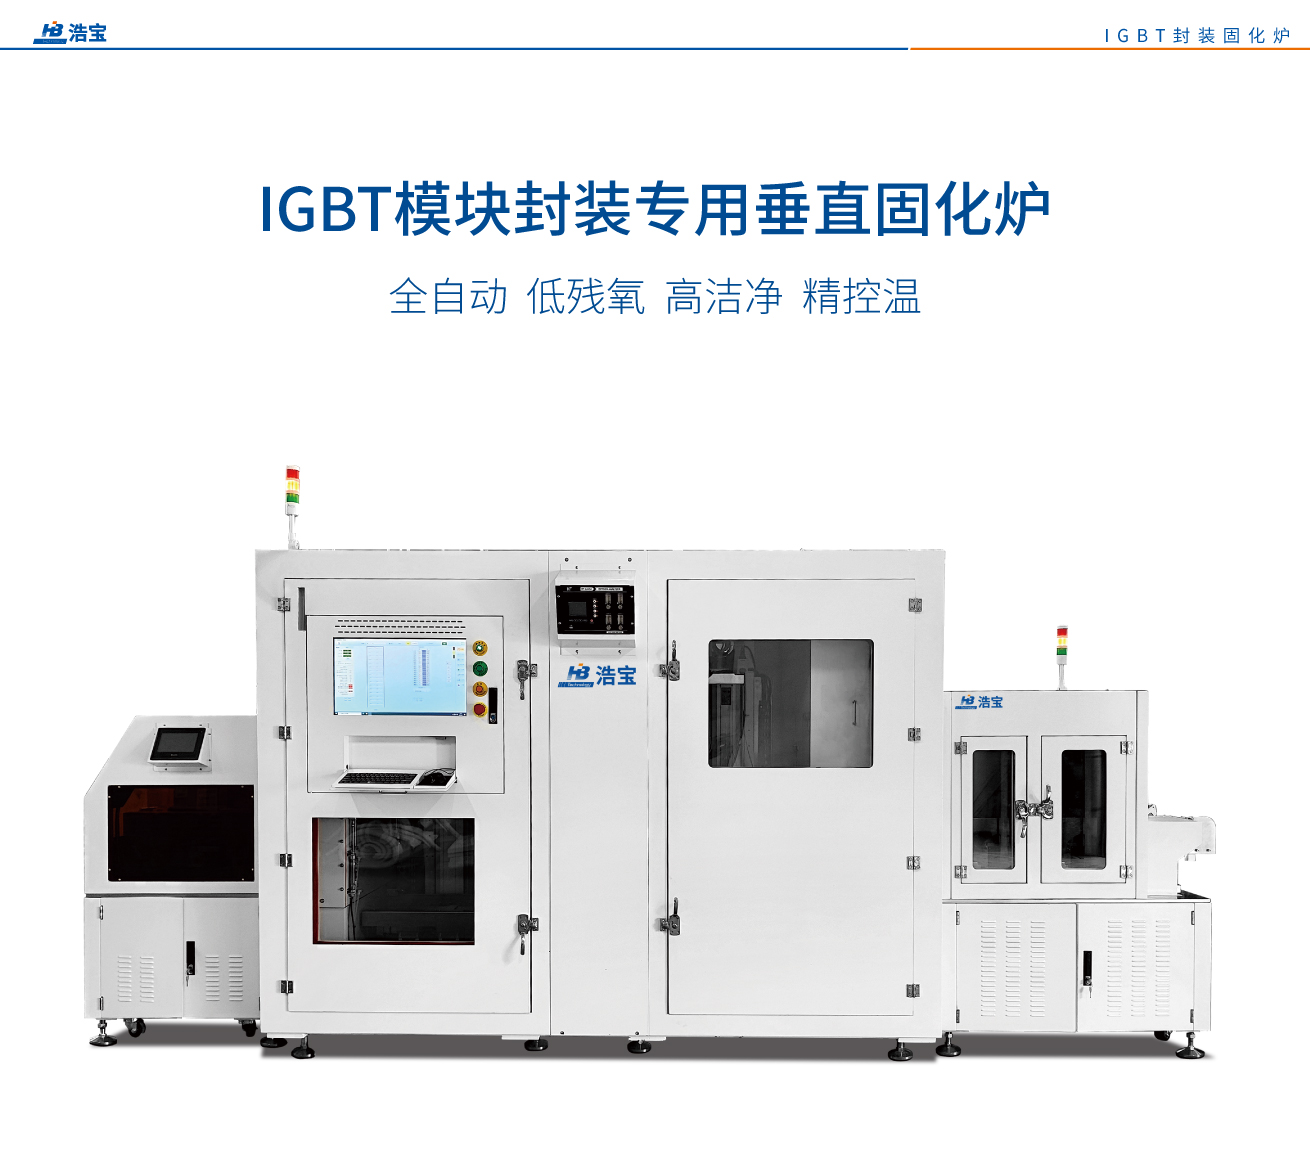 浩宝IGBT半导体功率模块封装专用固化炉：全自动、地残氧、高洁净、精控温